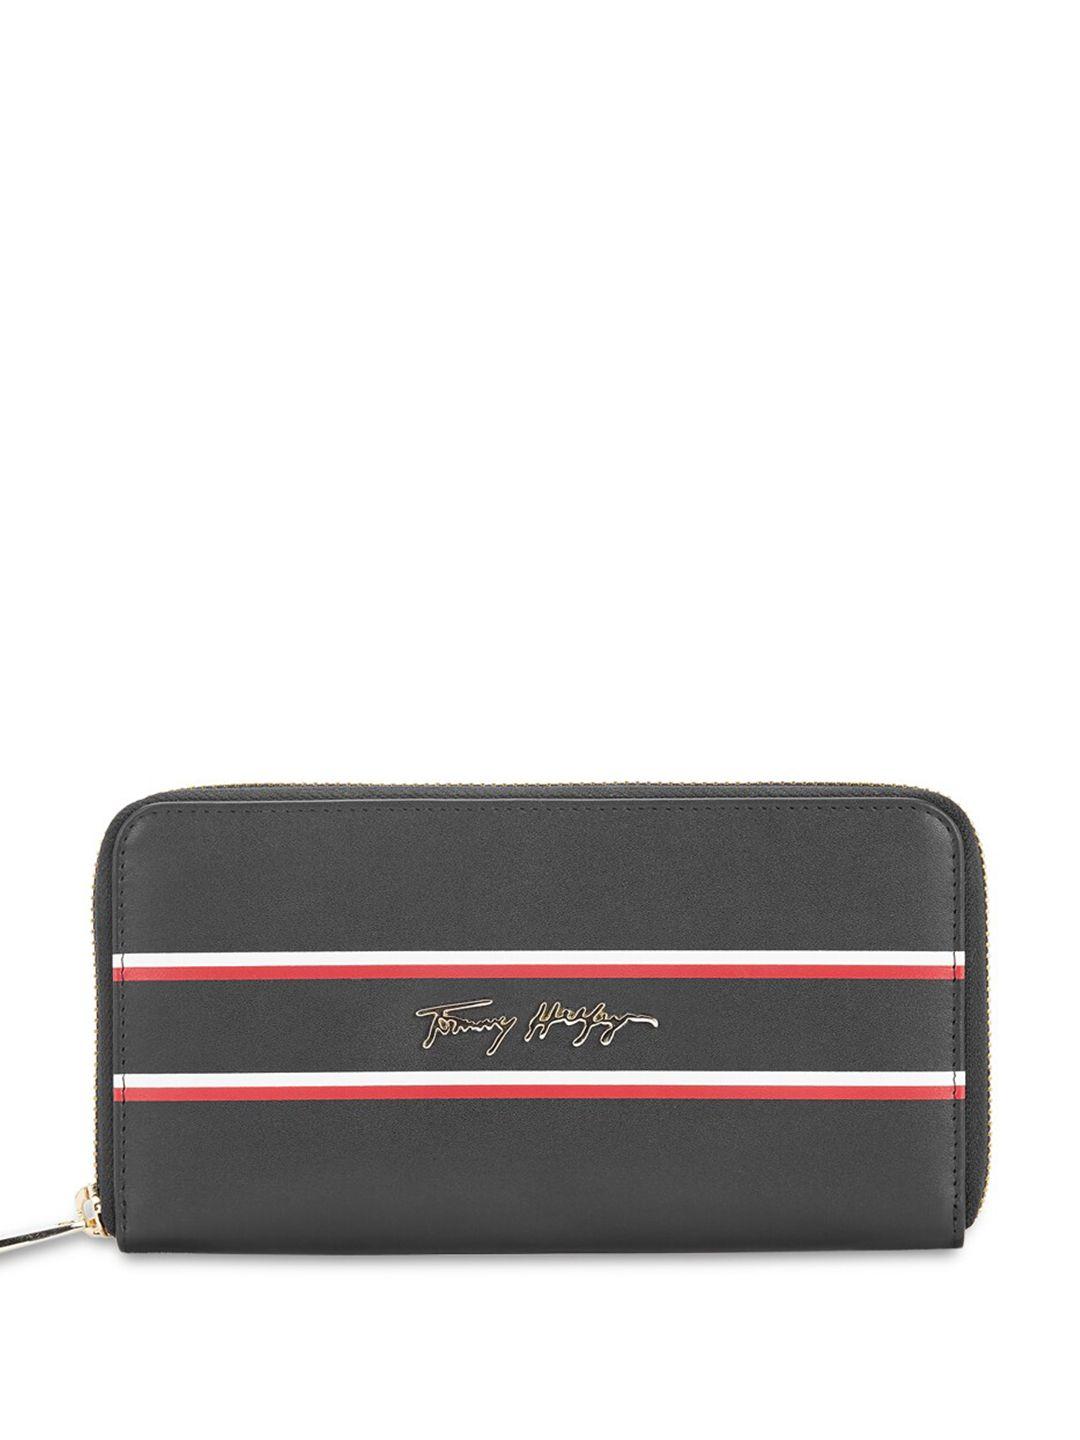 tommy hilfiger women striped leather zip around wallet